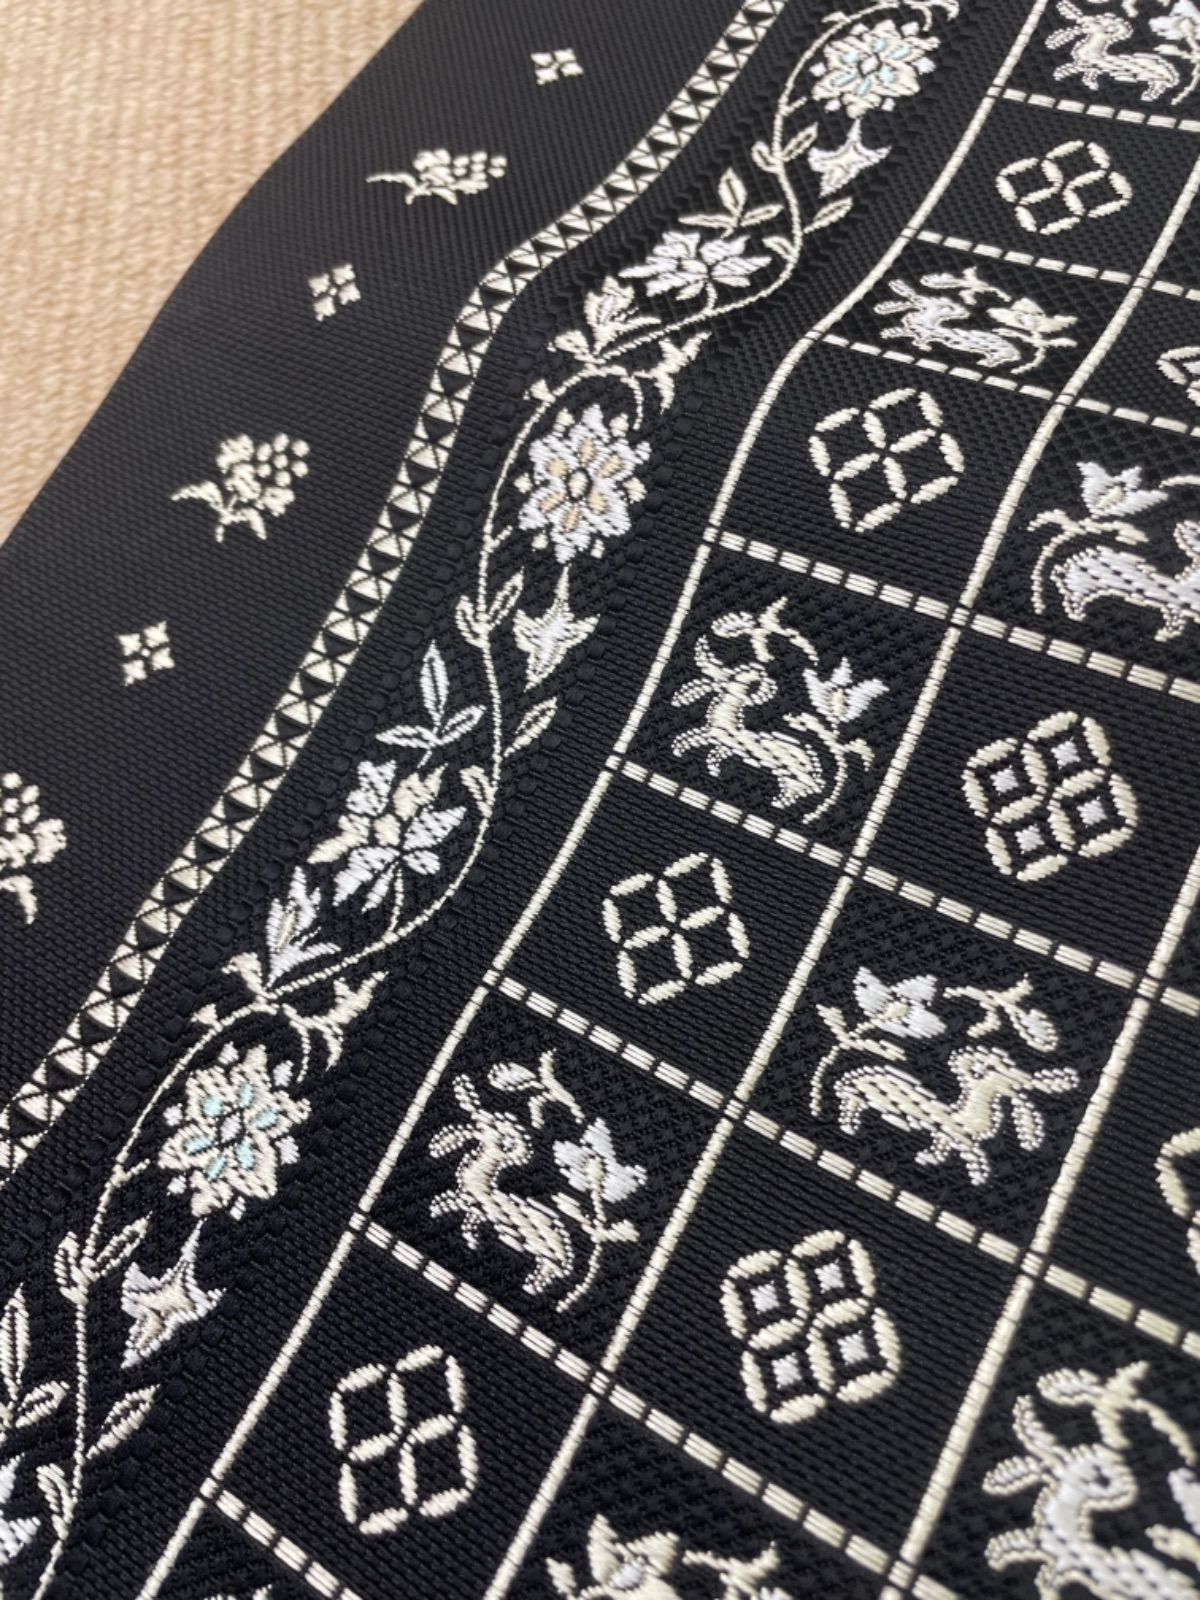 素材正絹新品 紋八寸なごや帯 名古屋帯 織の匠 本場筑前 伝統工芸博多織 正絹 八通